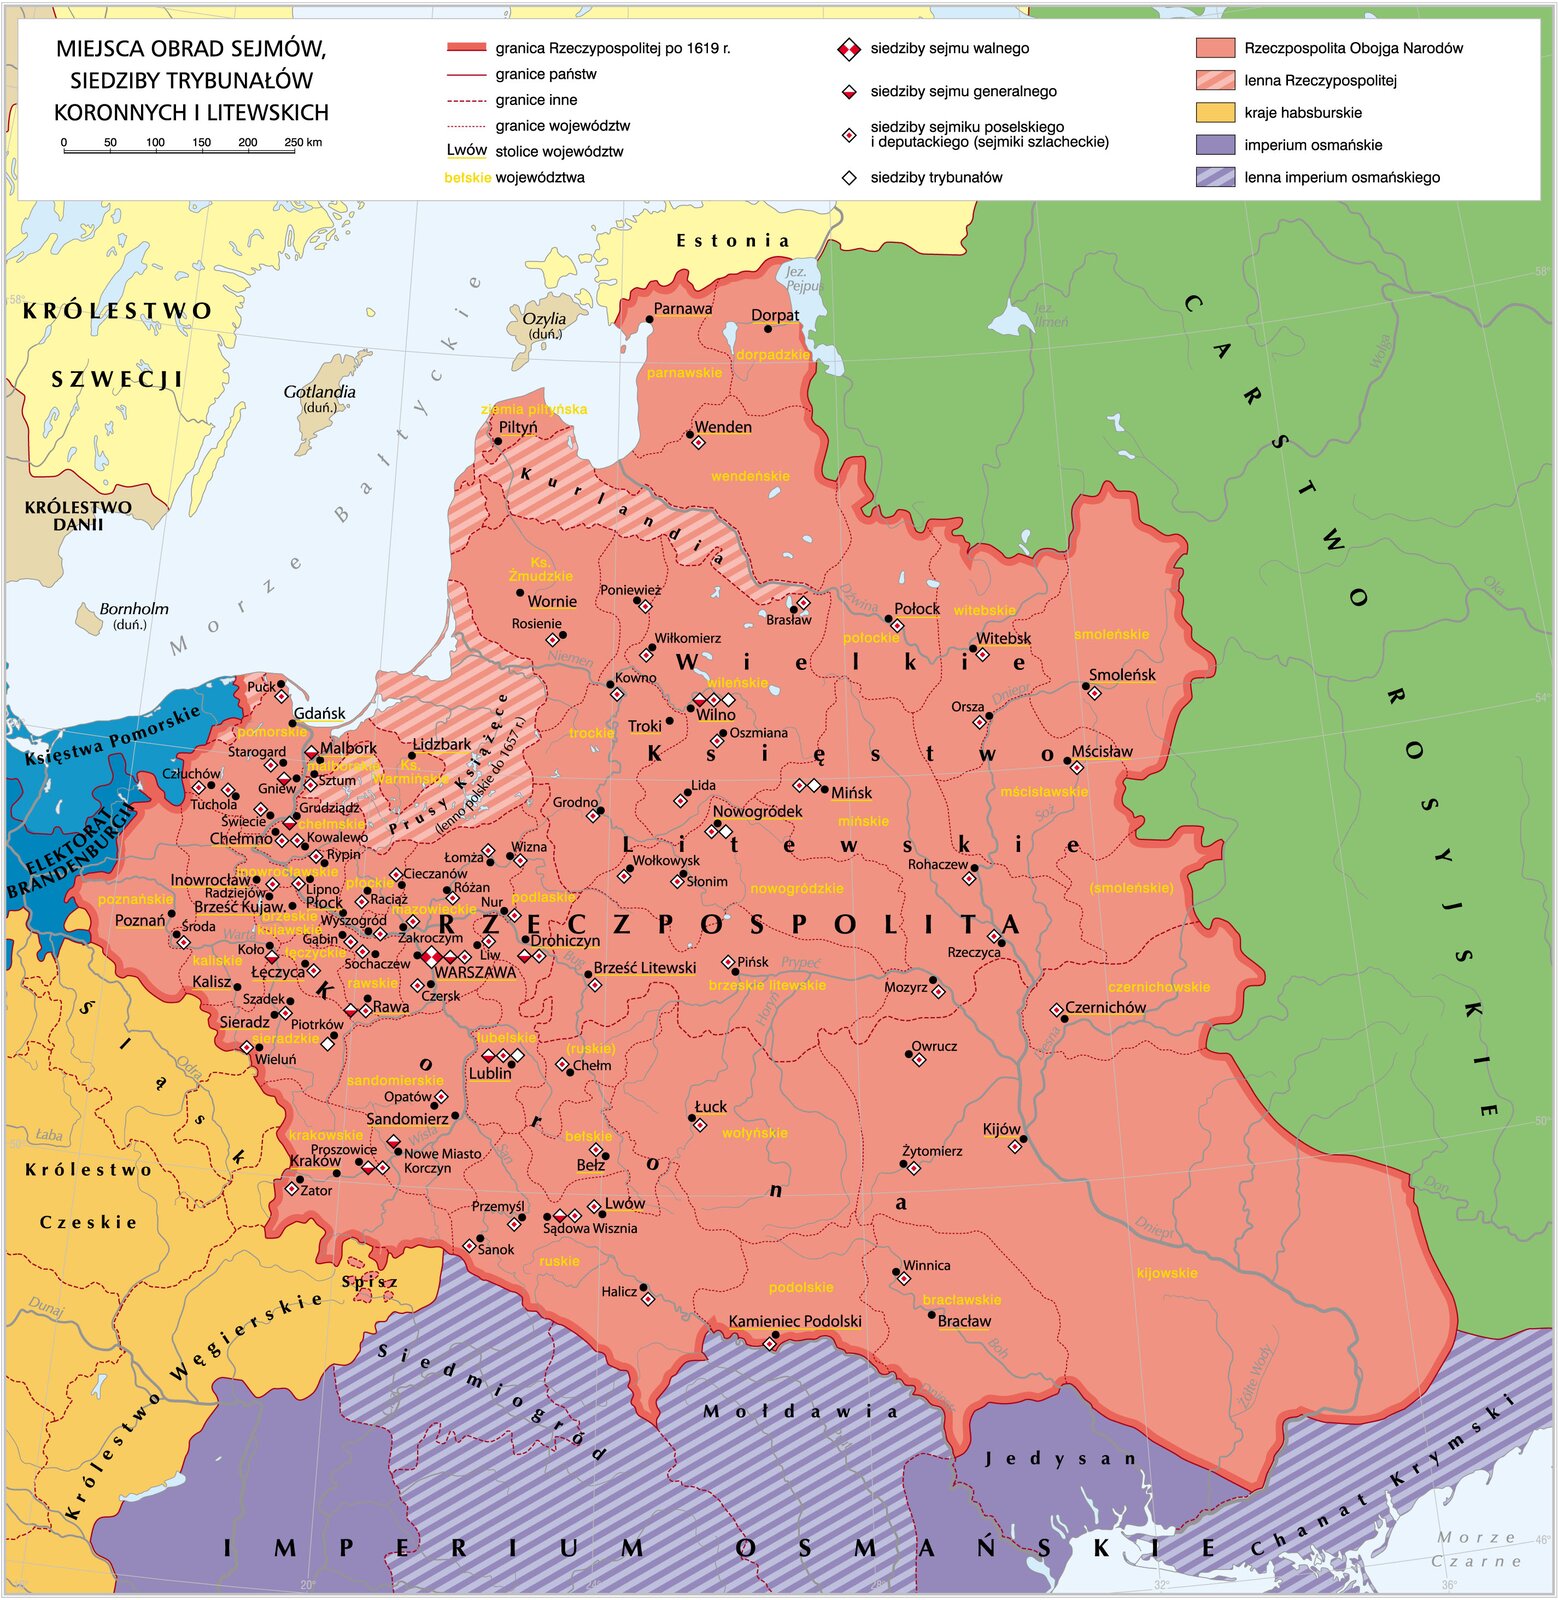 Mapa miejsc obrad sejmów, siedzib trybunałów koronnych i litewskich. Zawiera informacje, gdzie znajdowały się te siedziby. 